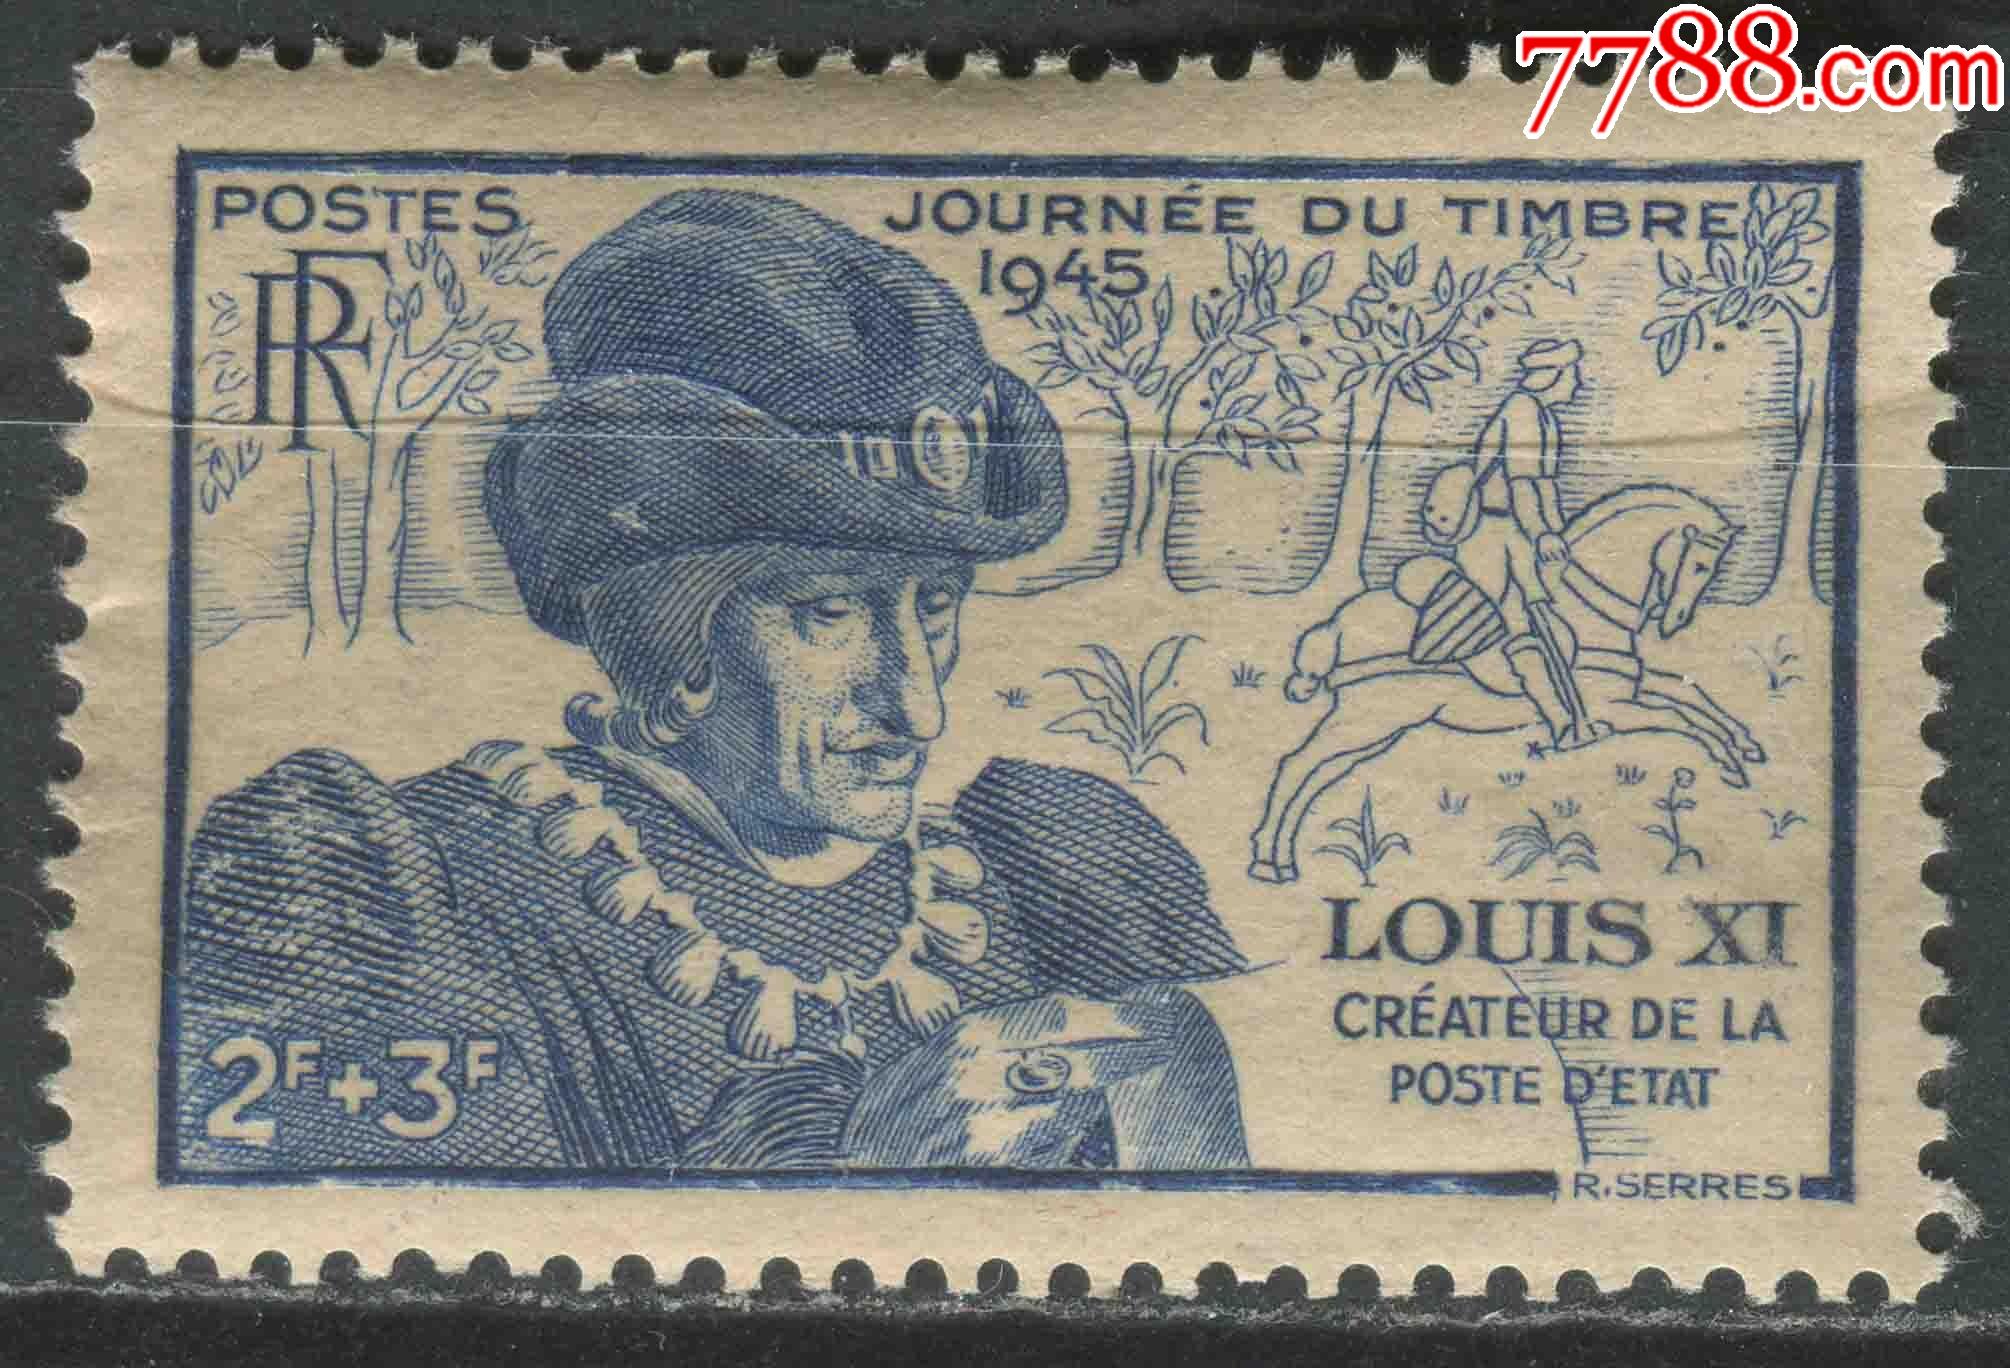 法国邮票最贵图片